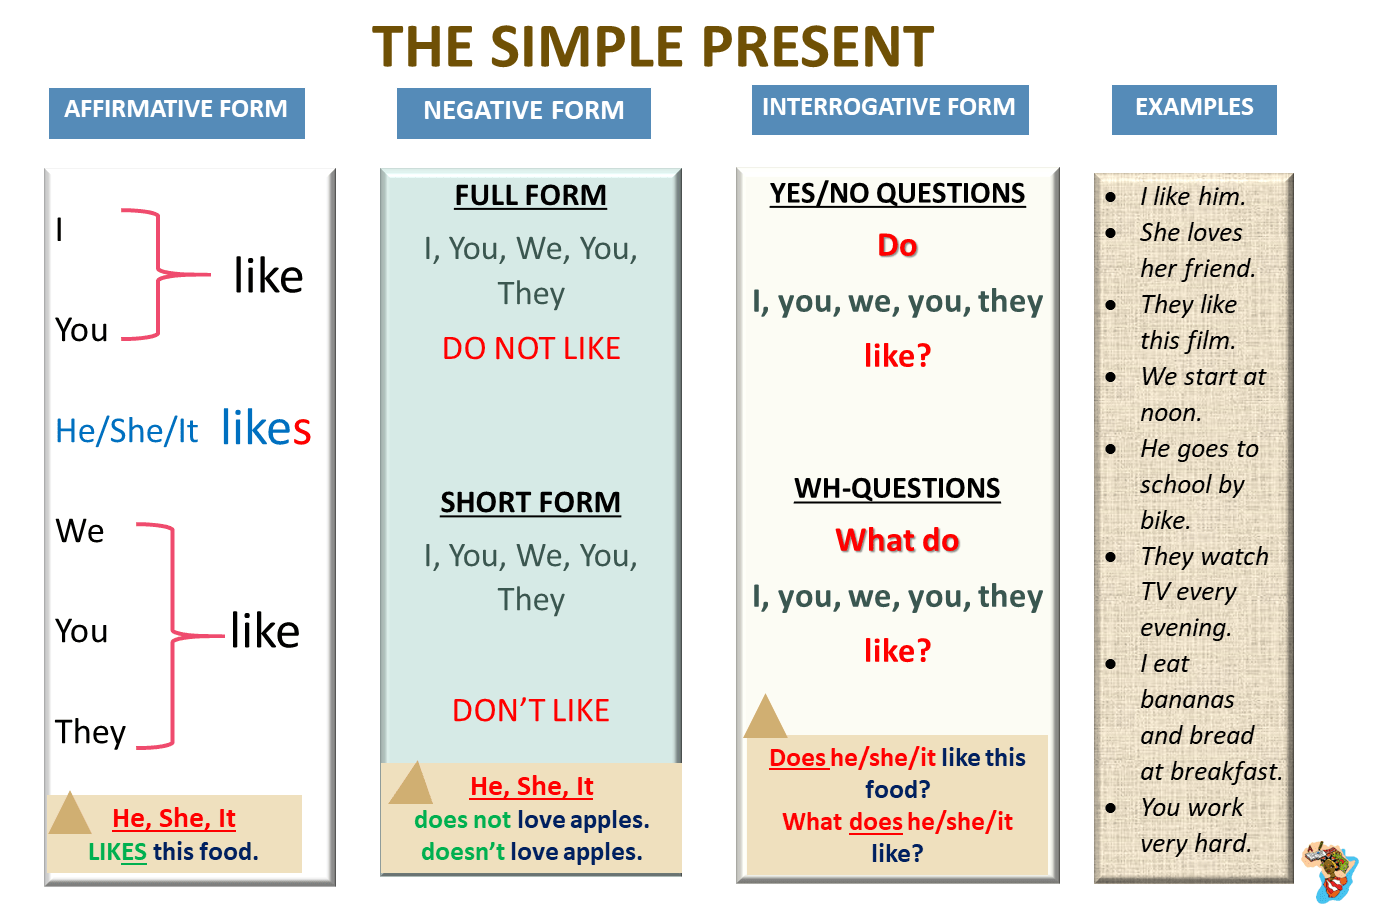 Правила по английскому языку present simple